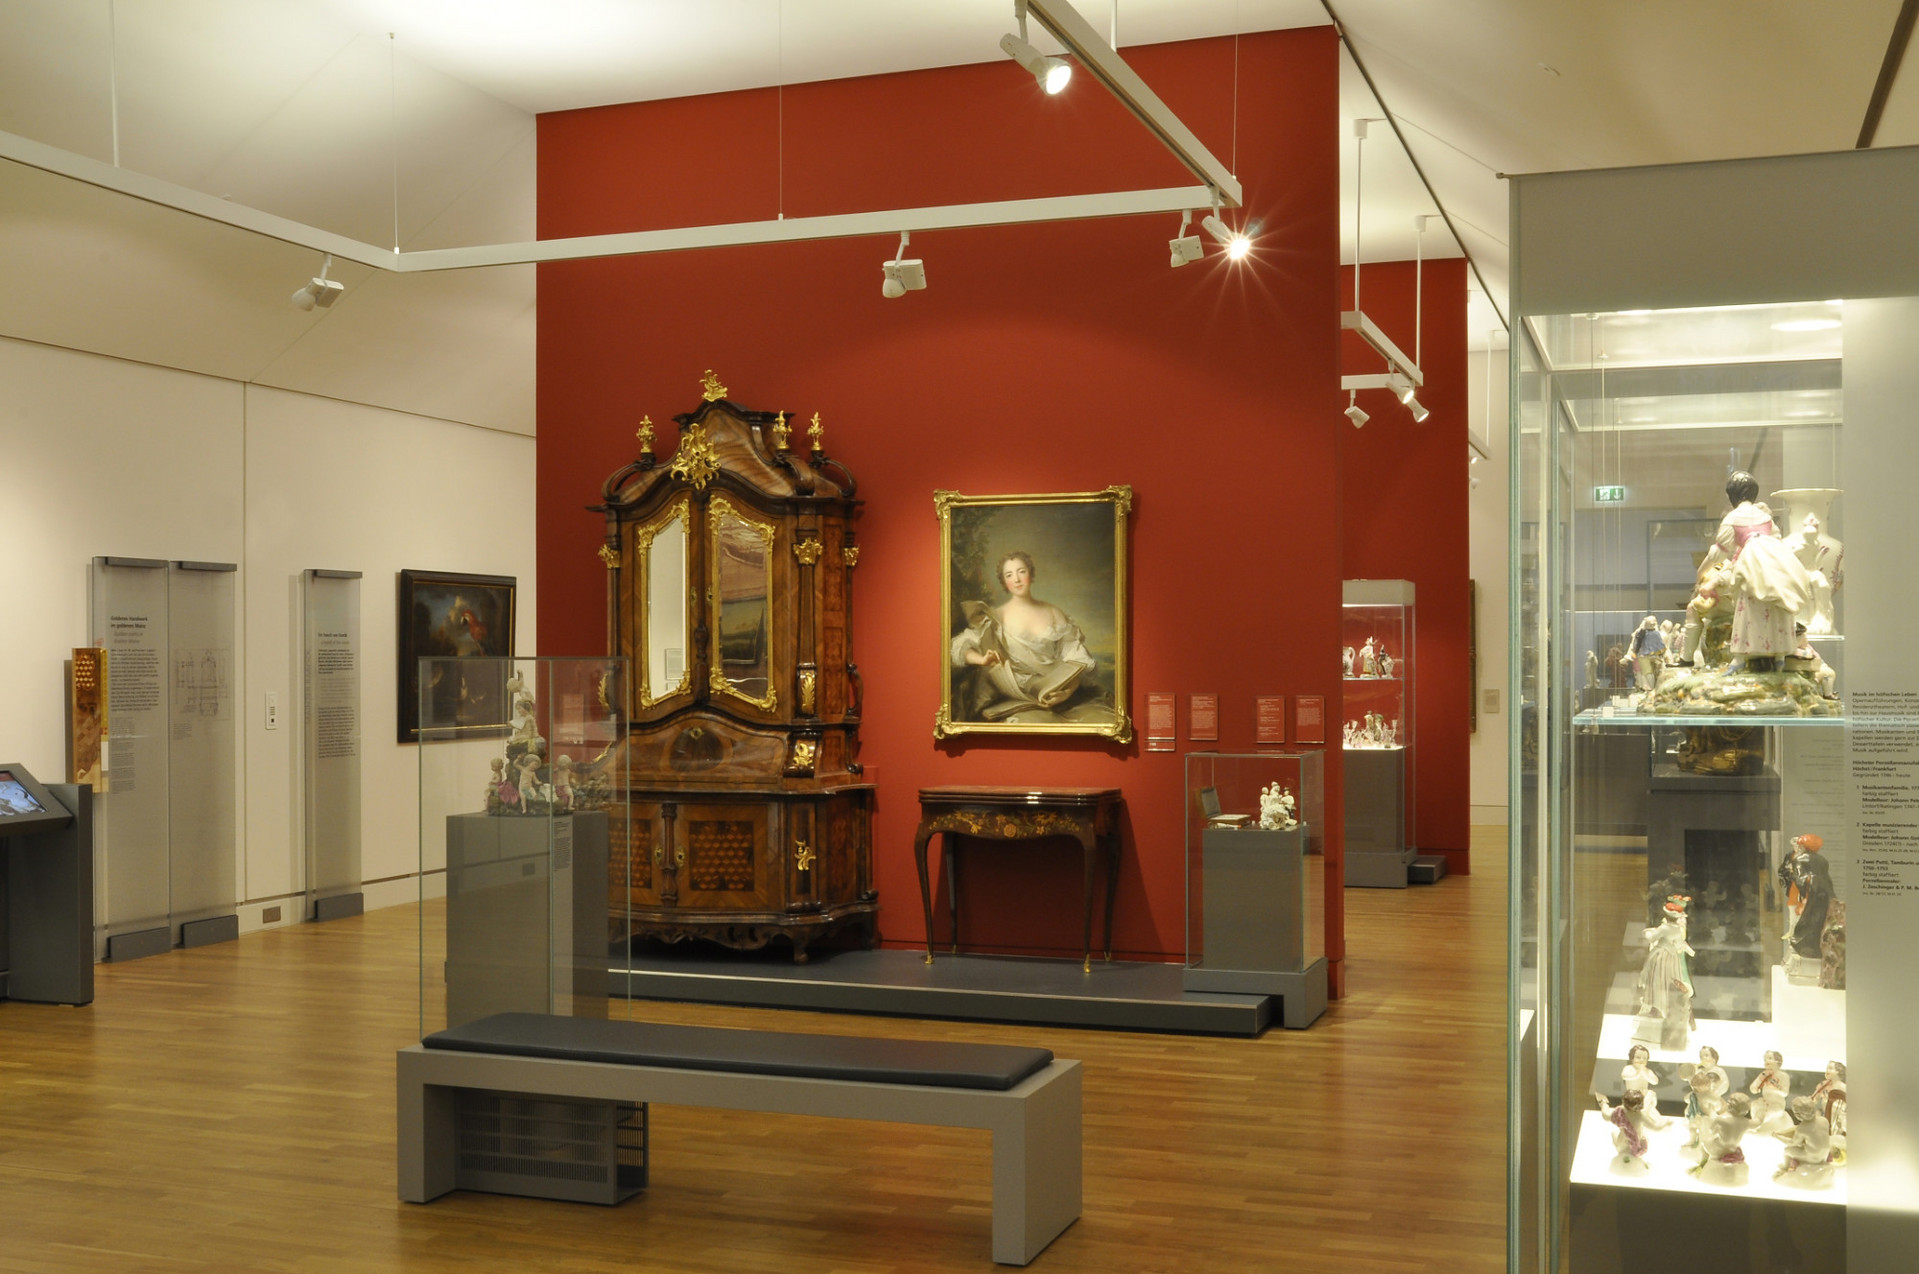 Ausstellungsraum mit barocken Ausstellungsstücken